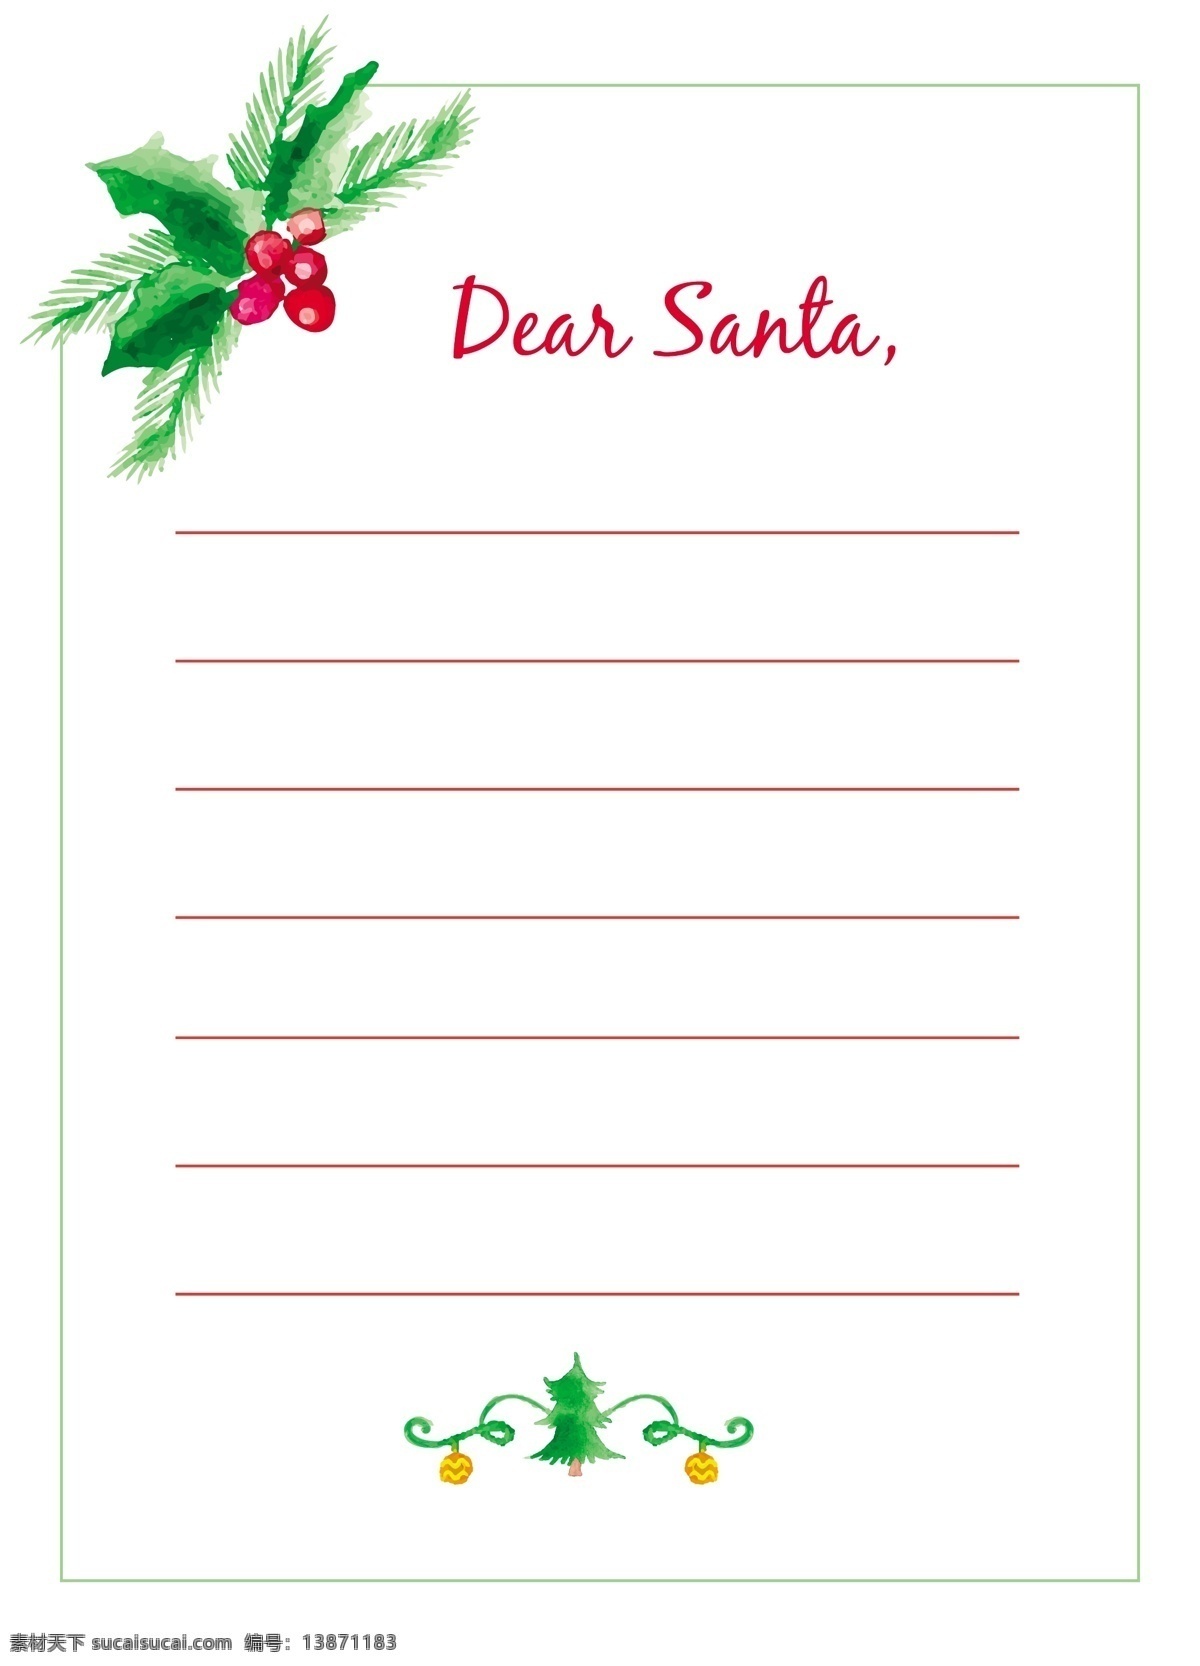 水彩 圣 克劳斯 信 模板 圣诞节 手卡 圣诞快乐 冬天 油漆 快乐 圣克劳斯 圣诞卡 圣诞 庆祝 节日 节日快乐 季节 白色